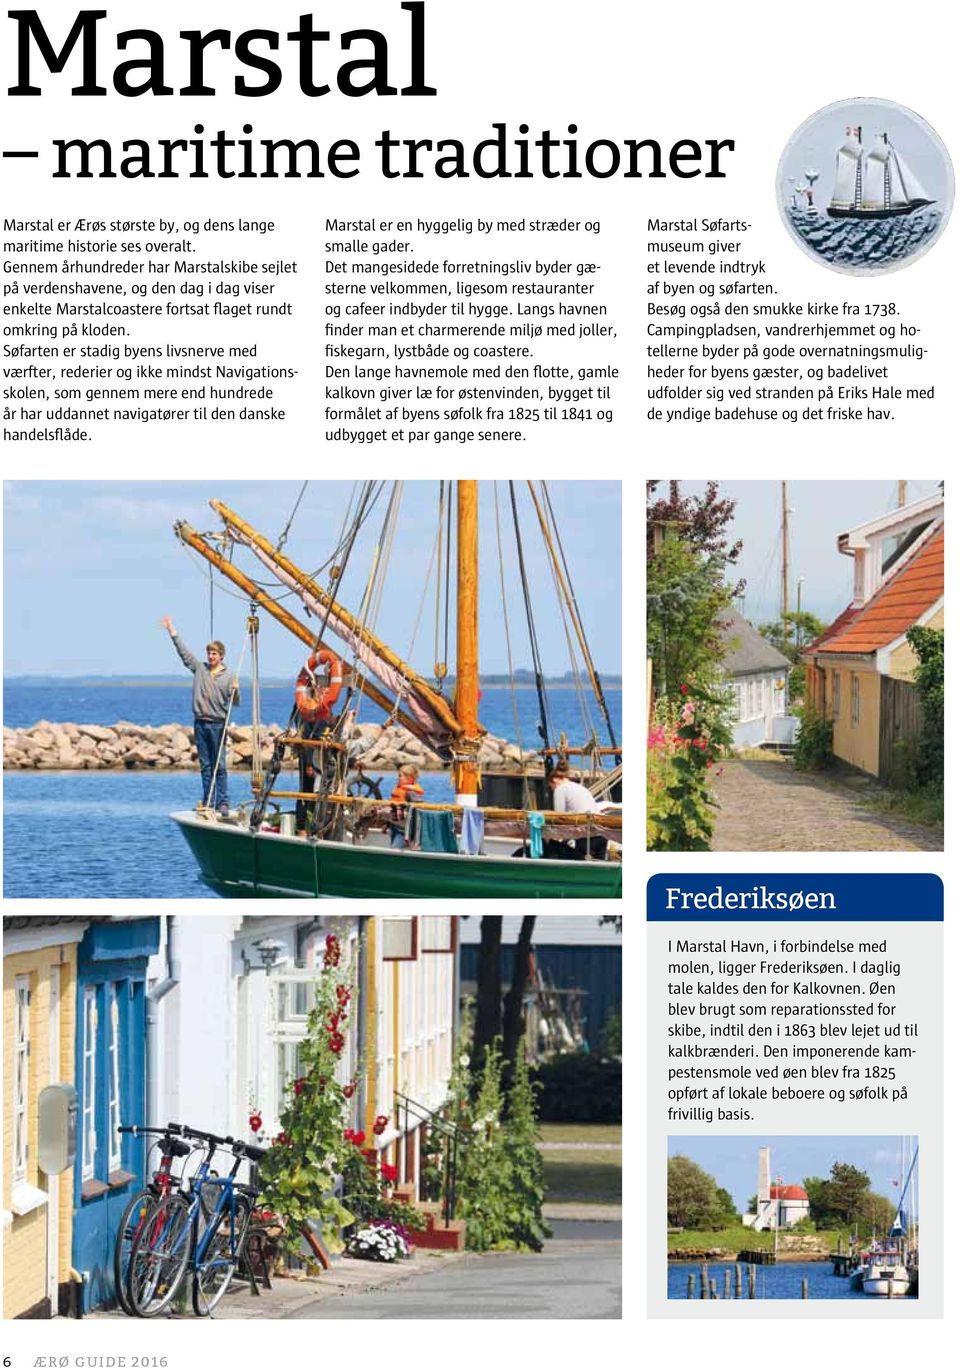 Søfarten er stadig byens livsnerve med værfter, rederier og ikke mindst Navigationsskolen, som gennem mere end hundrede år har uddannet navigatører til den danske handelsflåde.